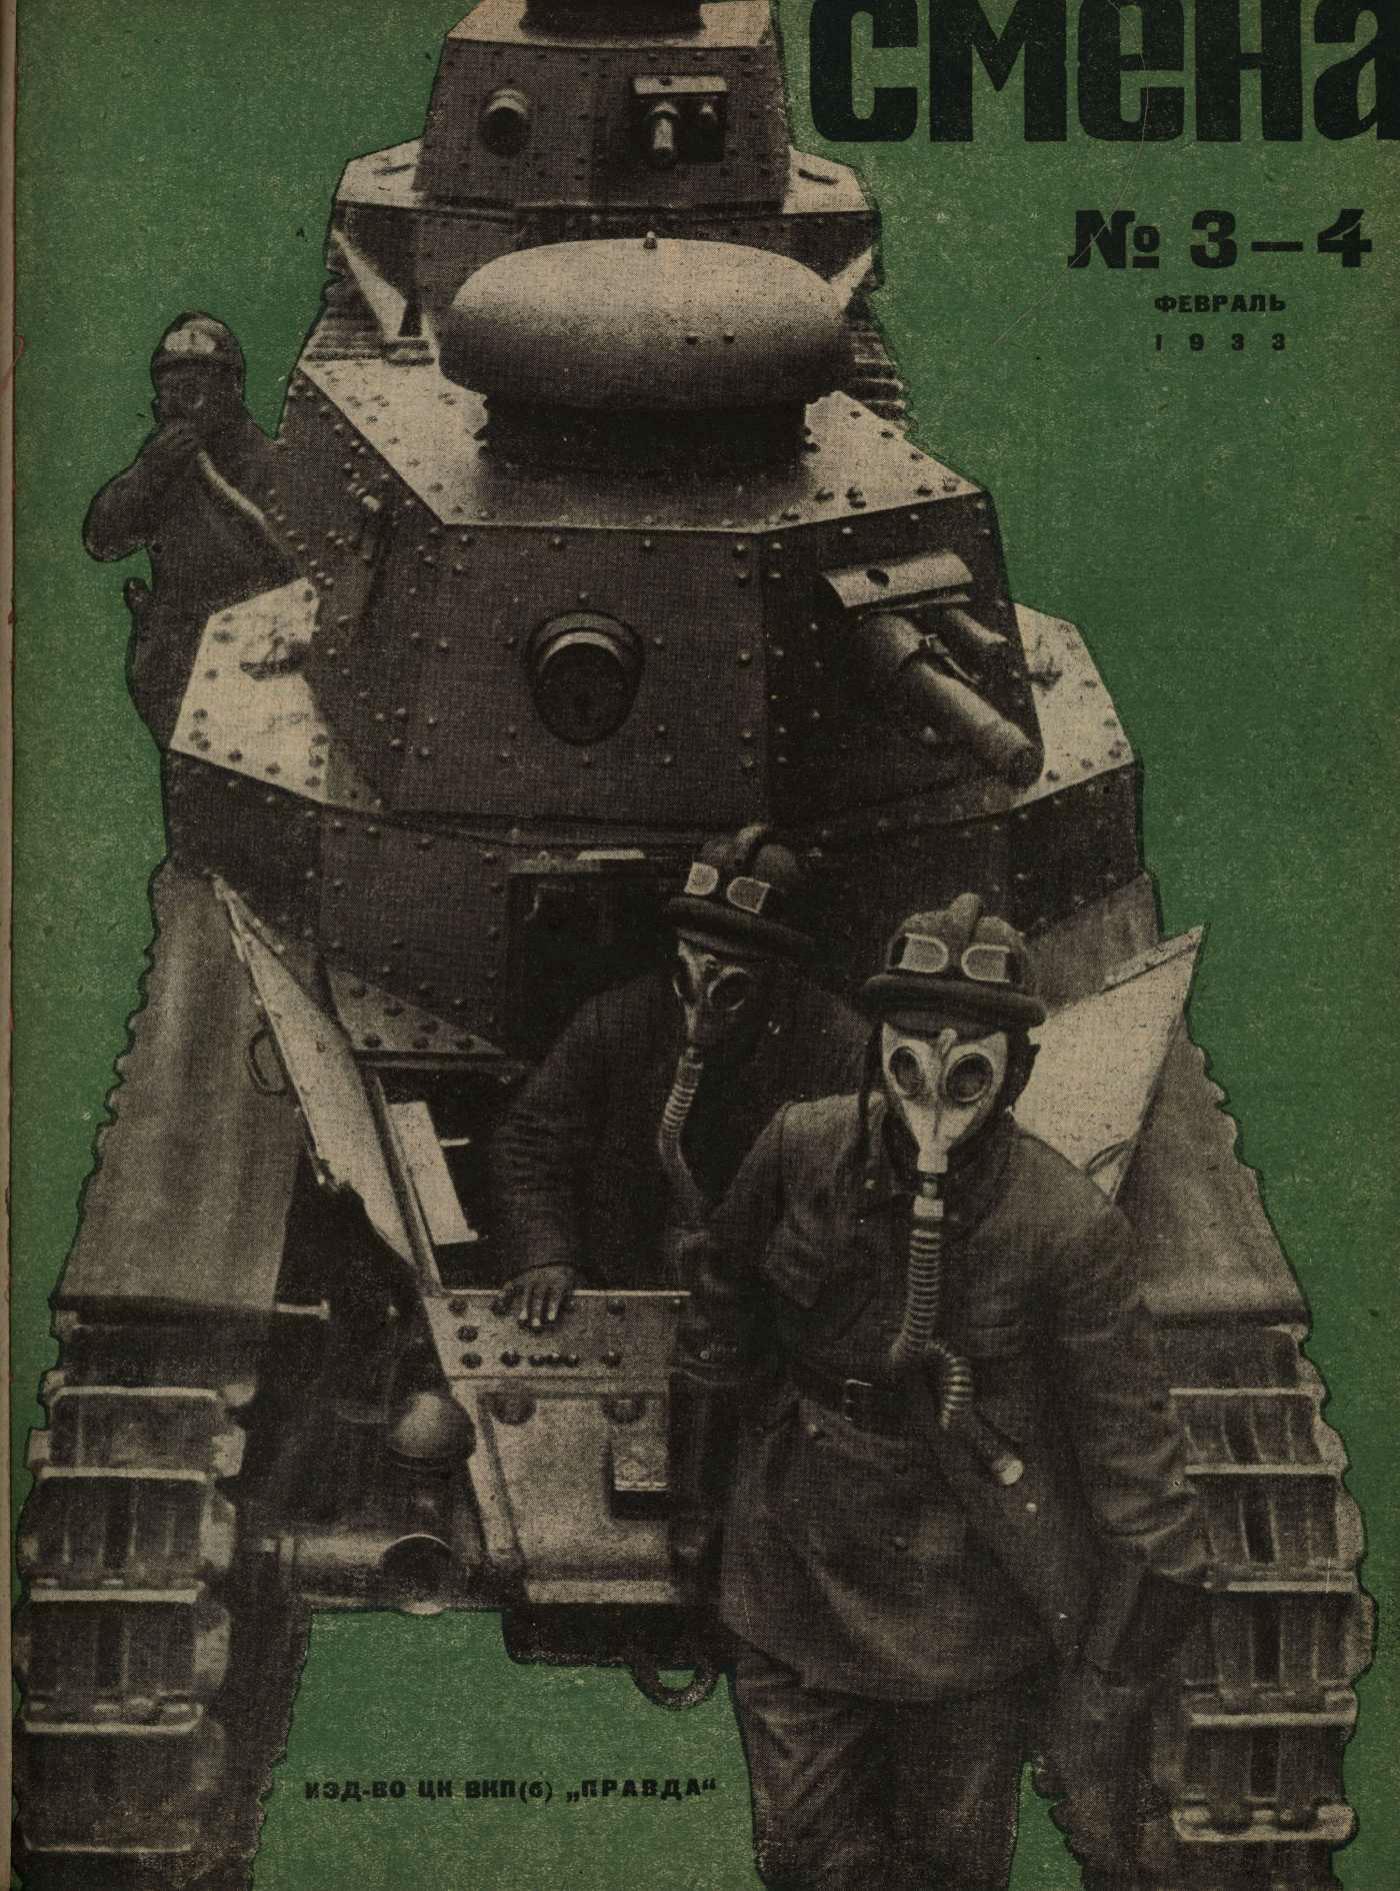 Титульный лист журнала "Смена", февраль 1933 года